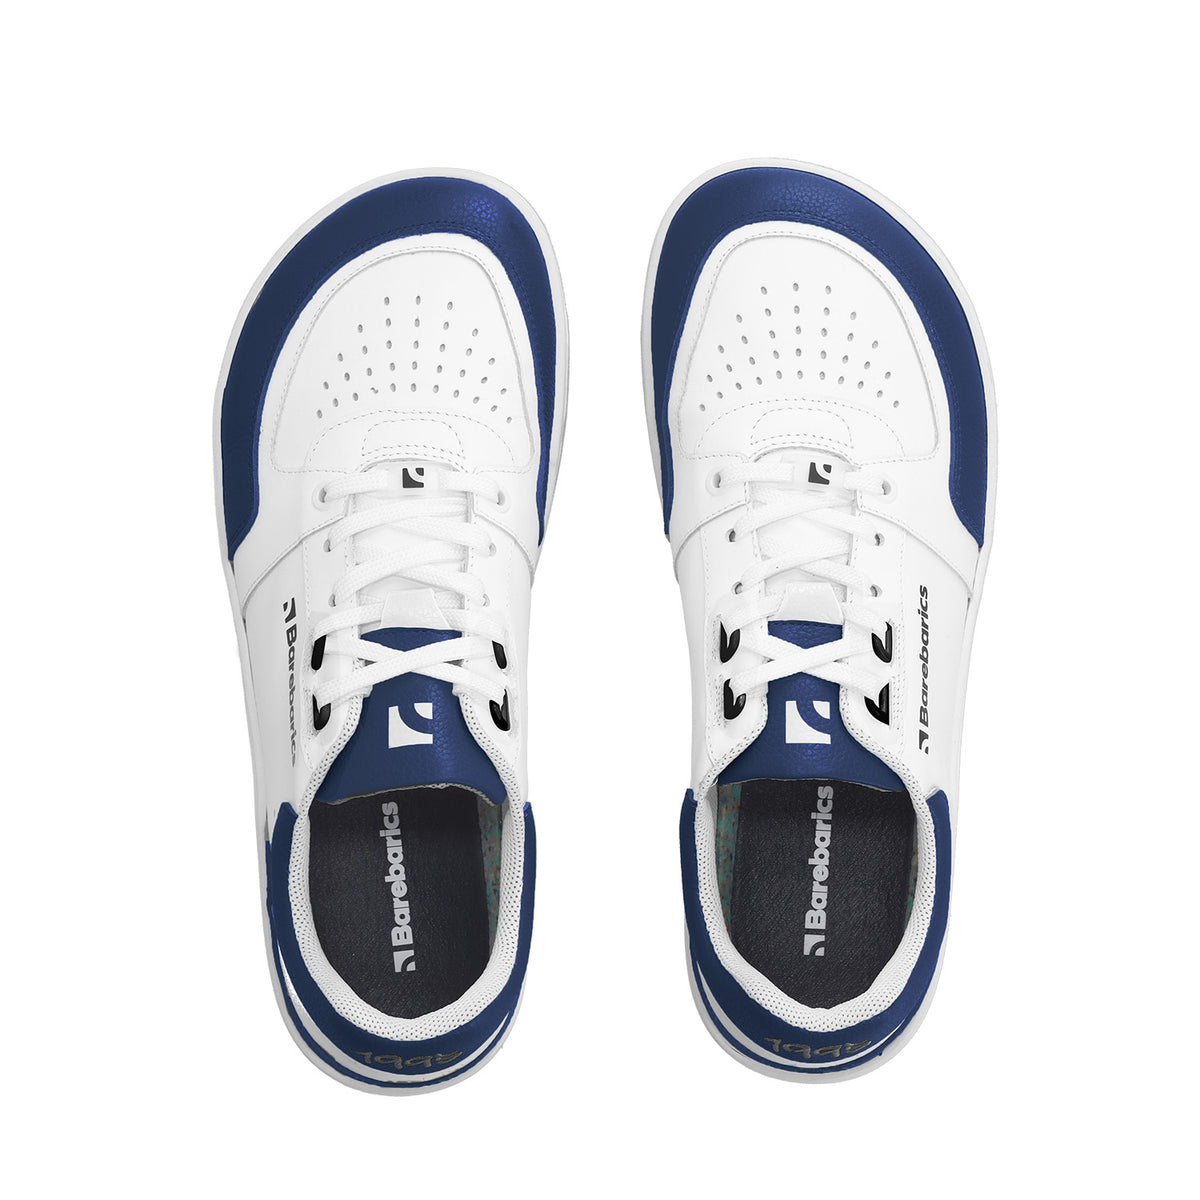 Barefoot Sneakers Barebarics Wave - White & Dark Blue 6  - OzBarefoot